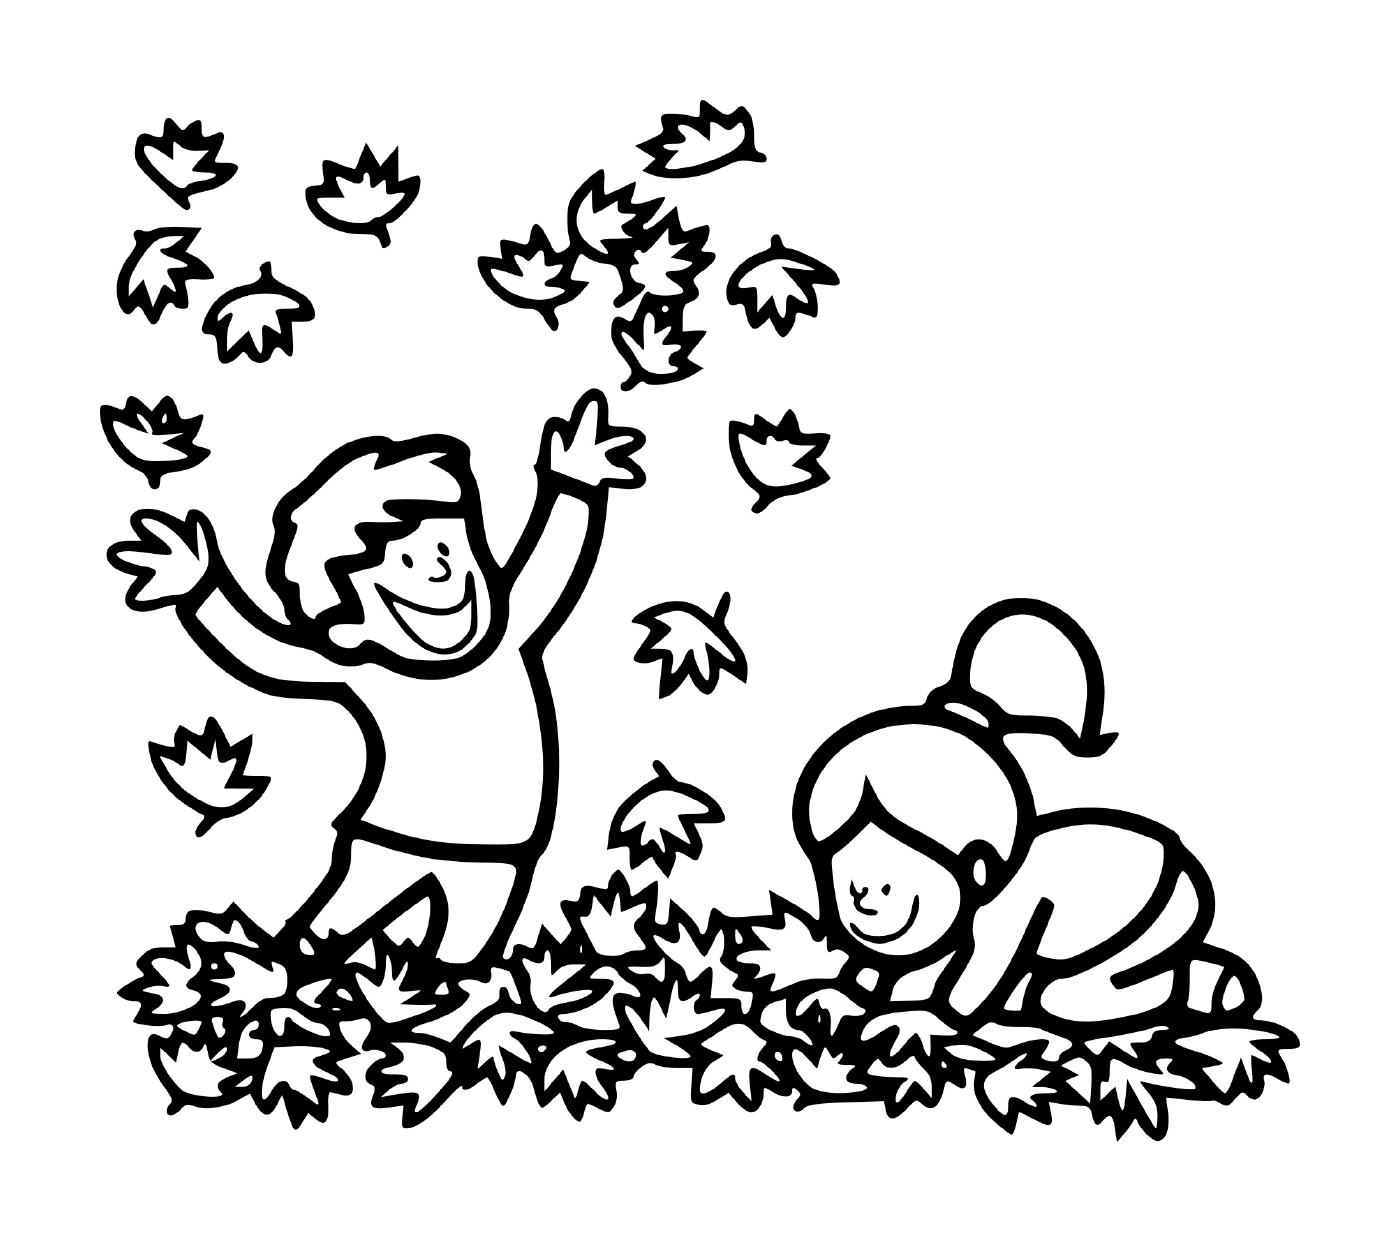  Мальчик и девочка, играющие в листьях 